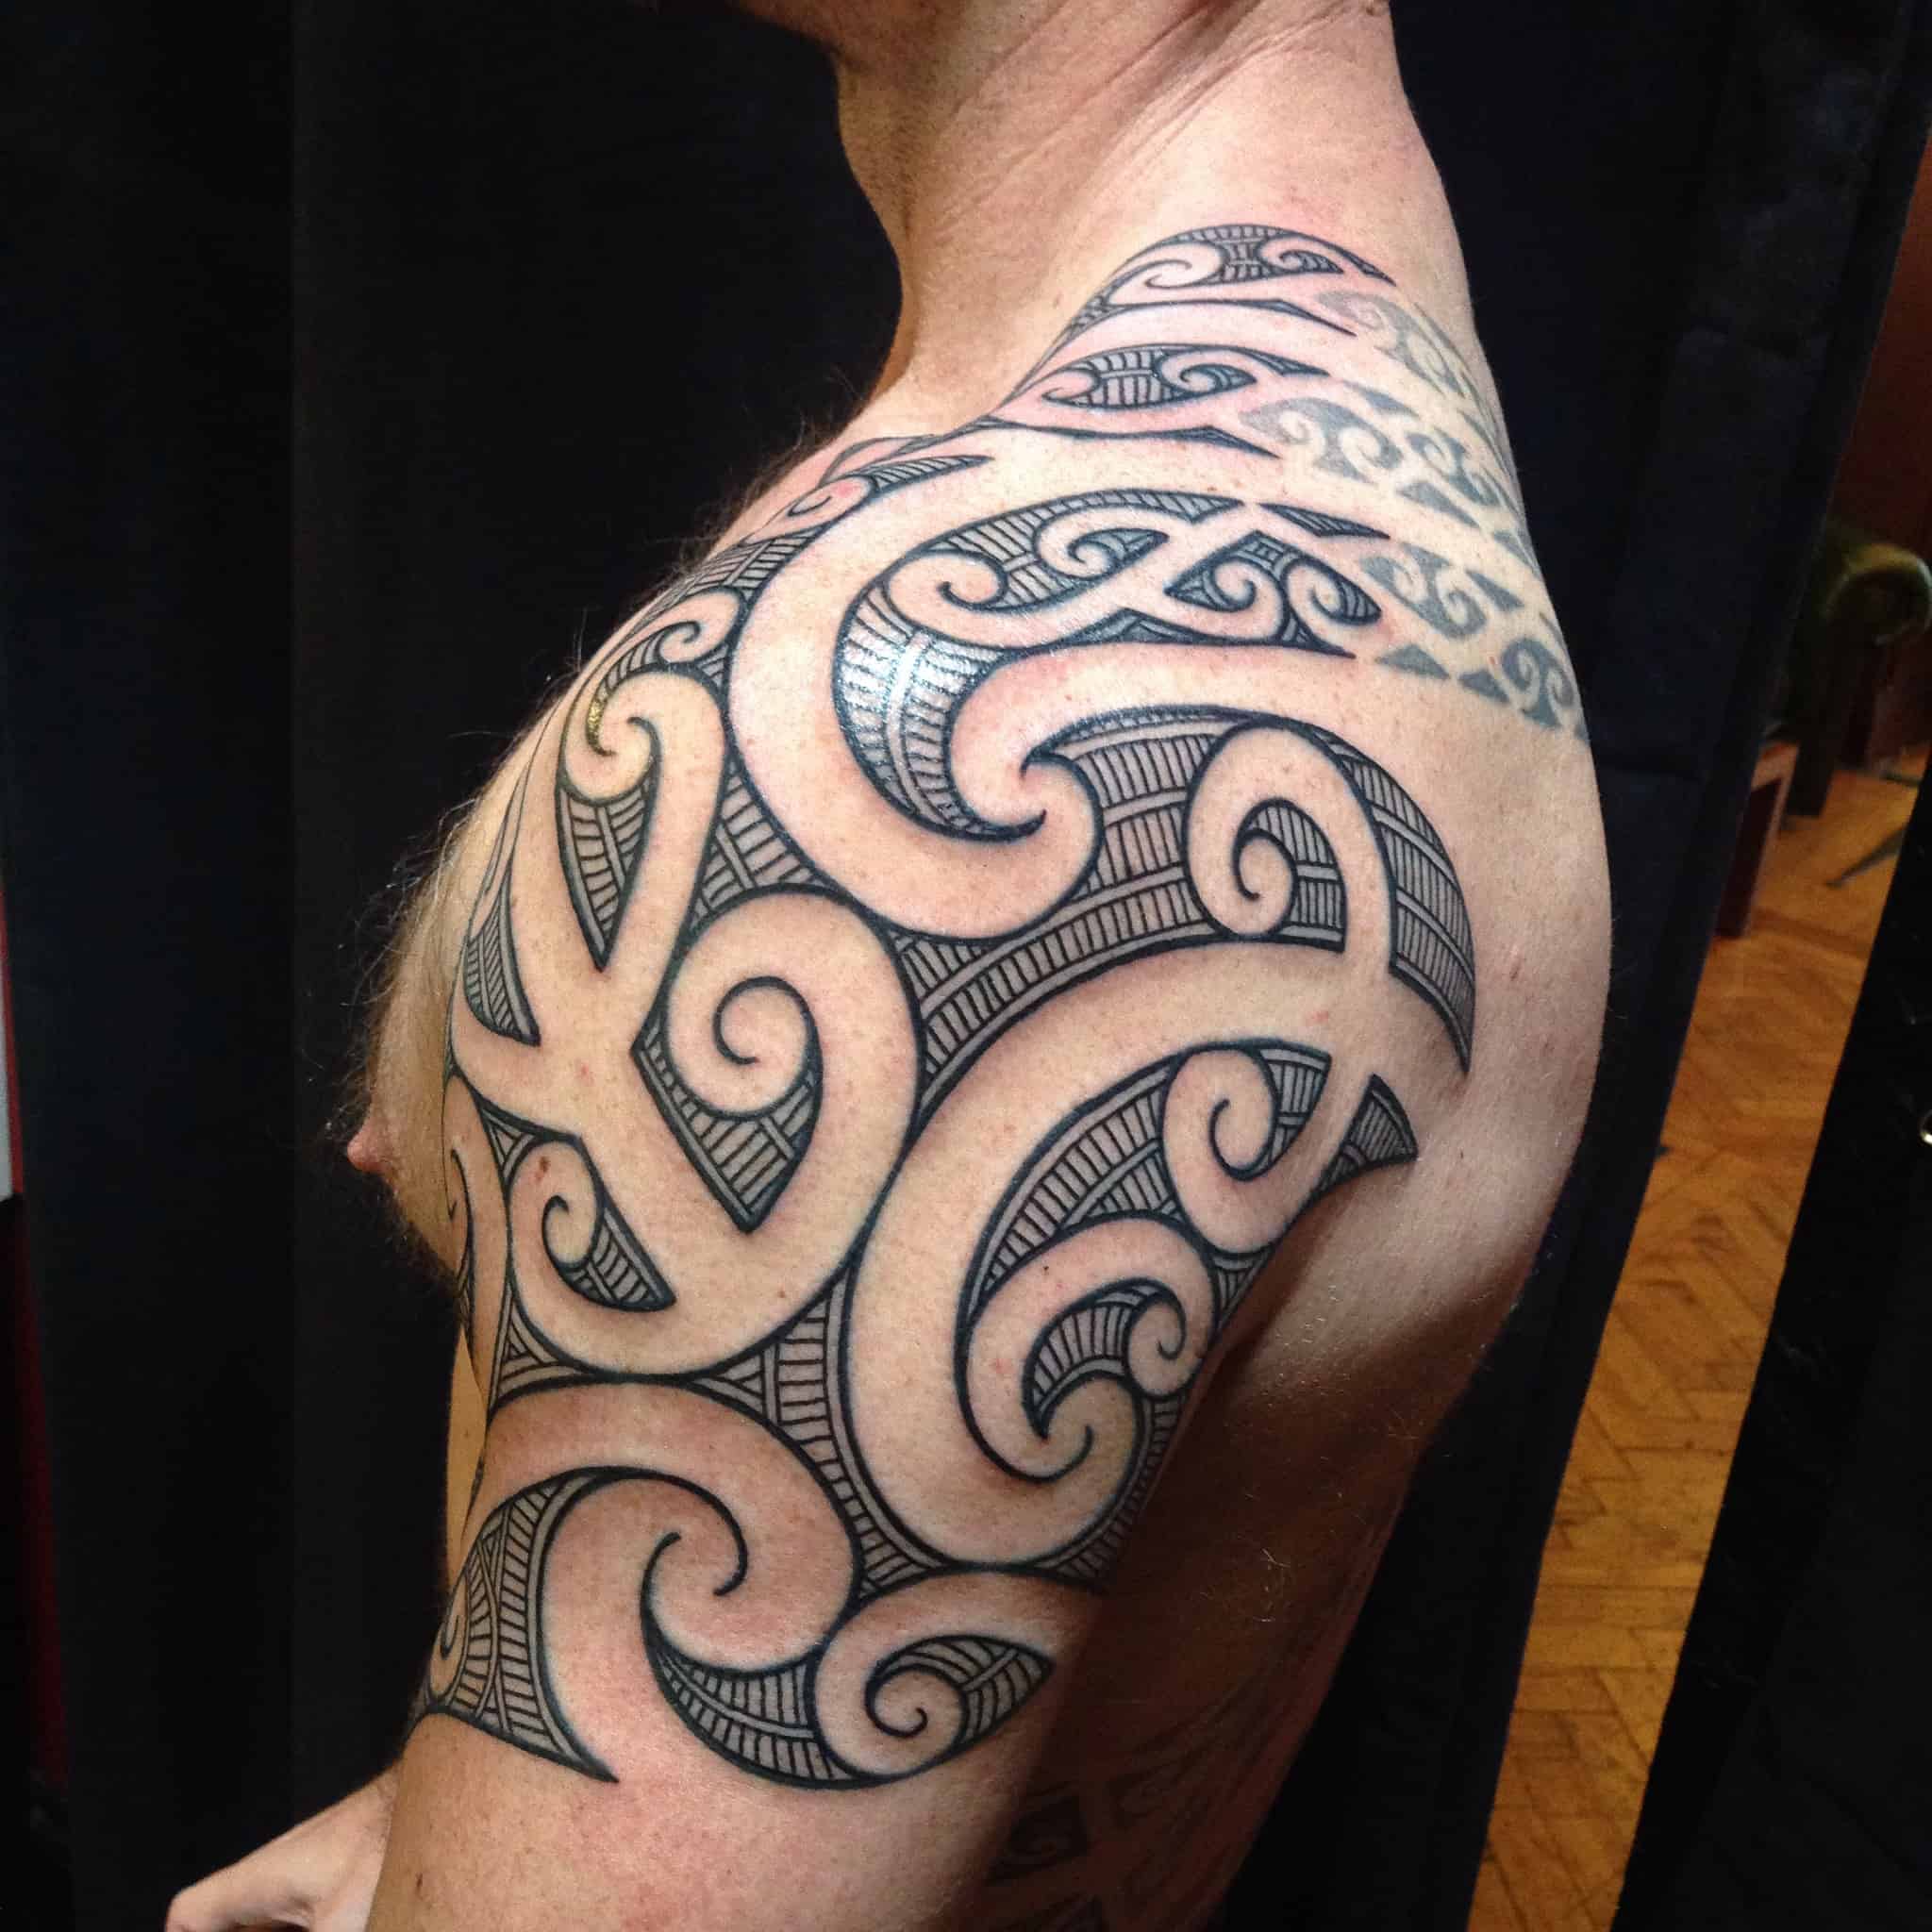 Татуировки маори: подробное знакомство с культурным наследием и значением татуировок маори